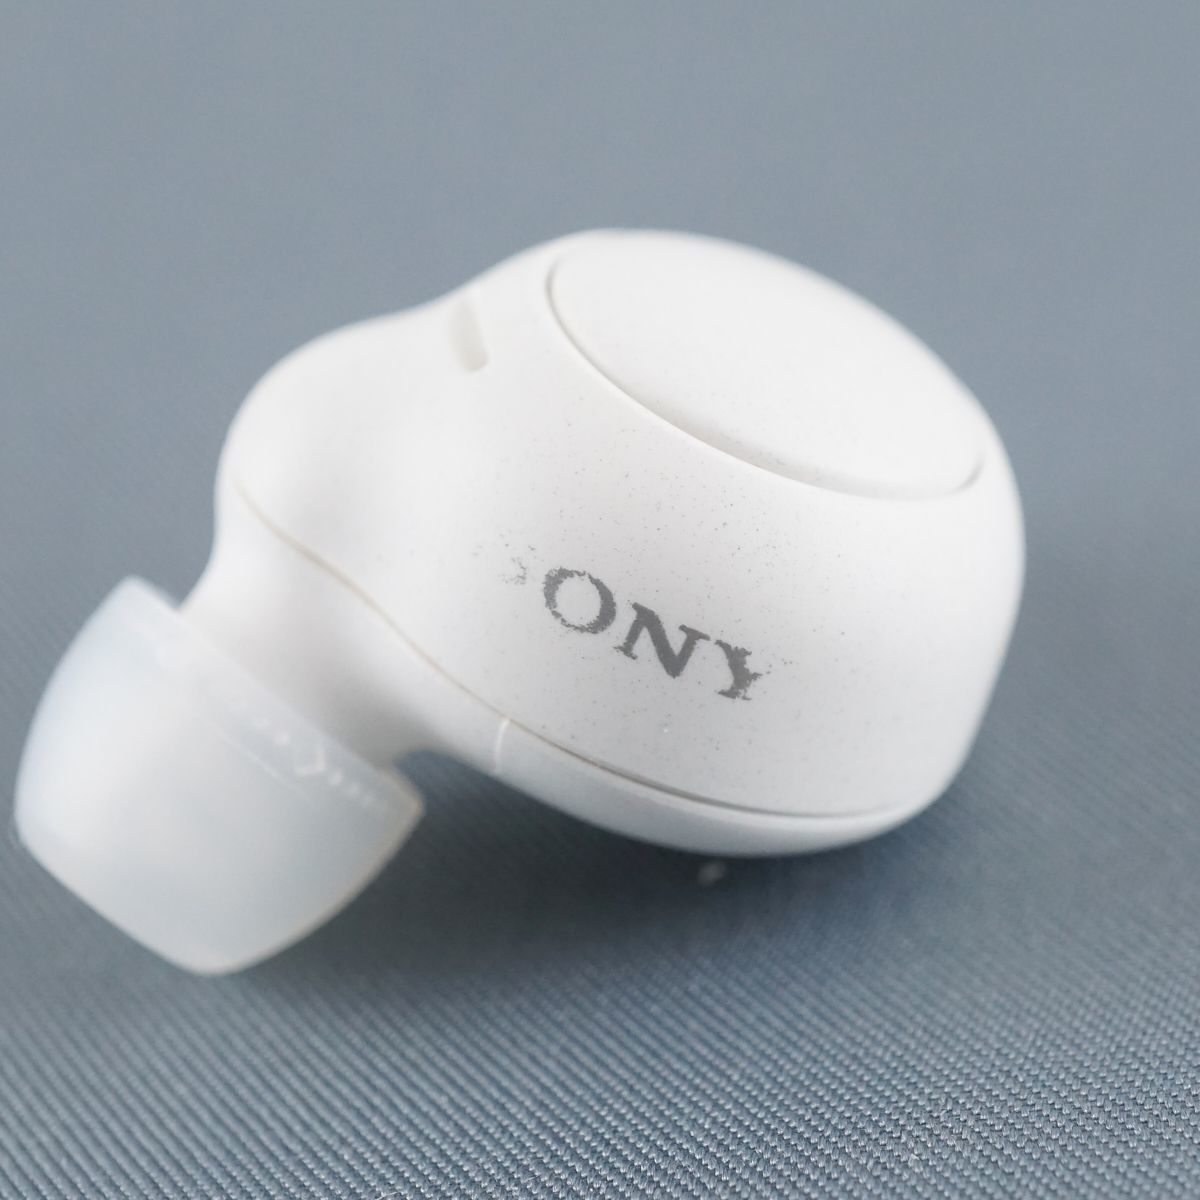 SONY WF-C500 左右イヤホンのみ USED美品 ワイヤレスイヤホン 両耳 LR 防滴 IPX4 DSEE 高音質 マイク ホワイト 完動品 S V9454_画像5